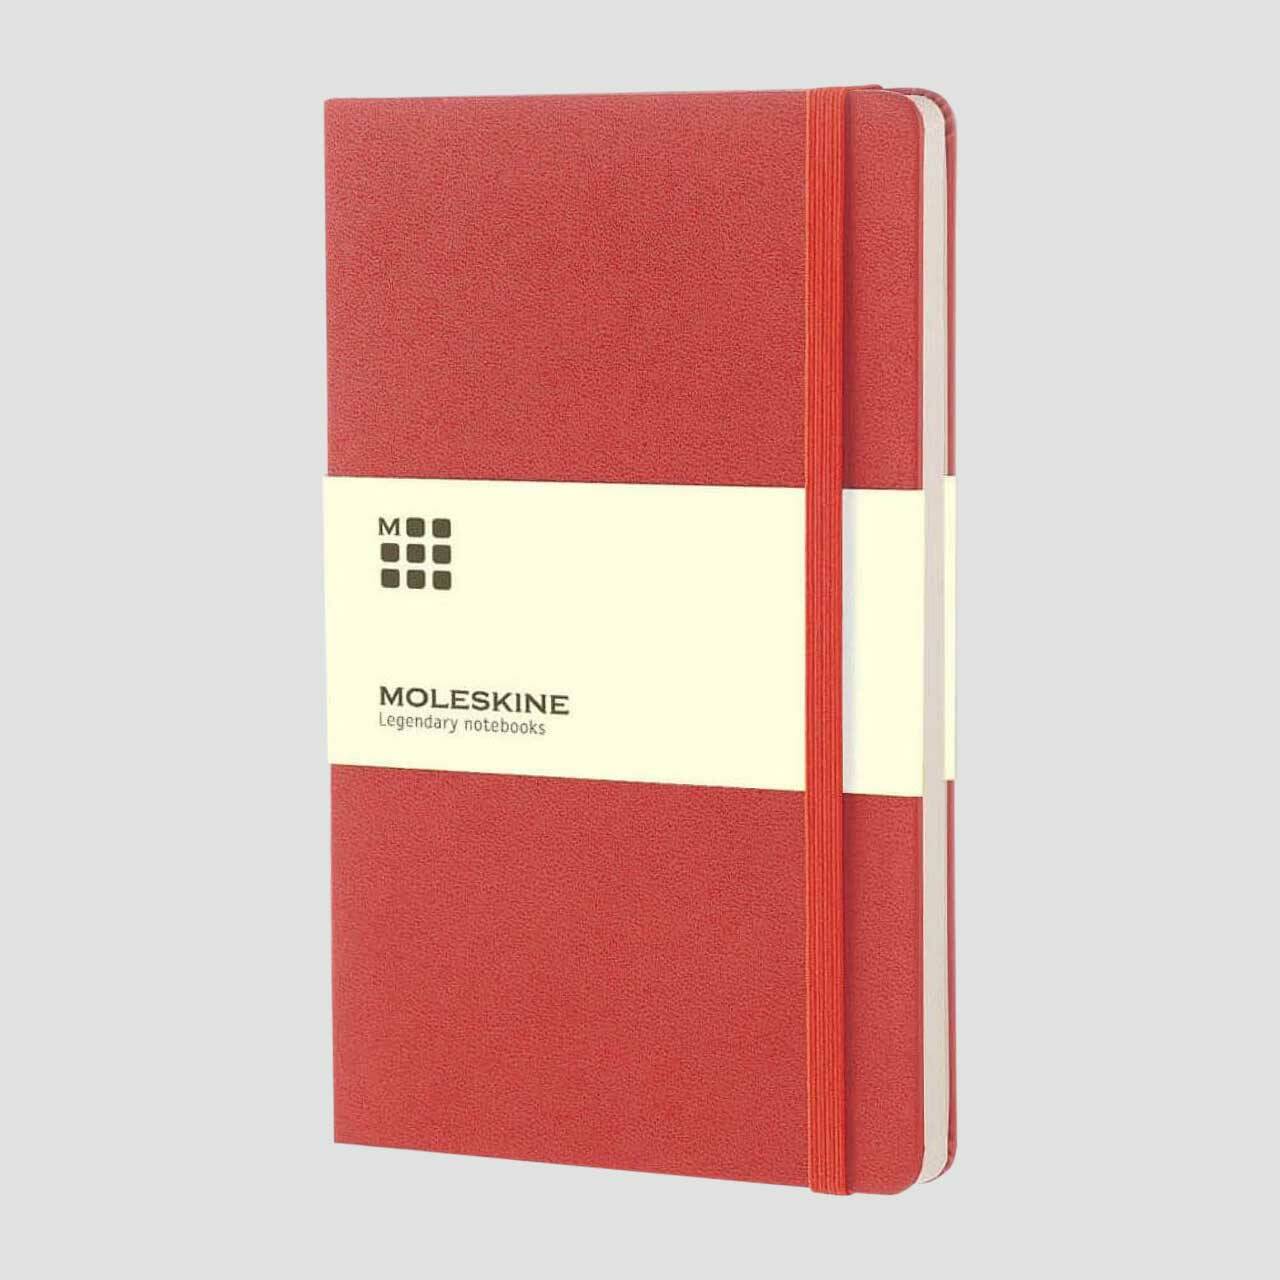 Moleskine notitieboek hard cover met banderol, oranje